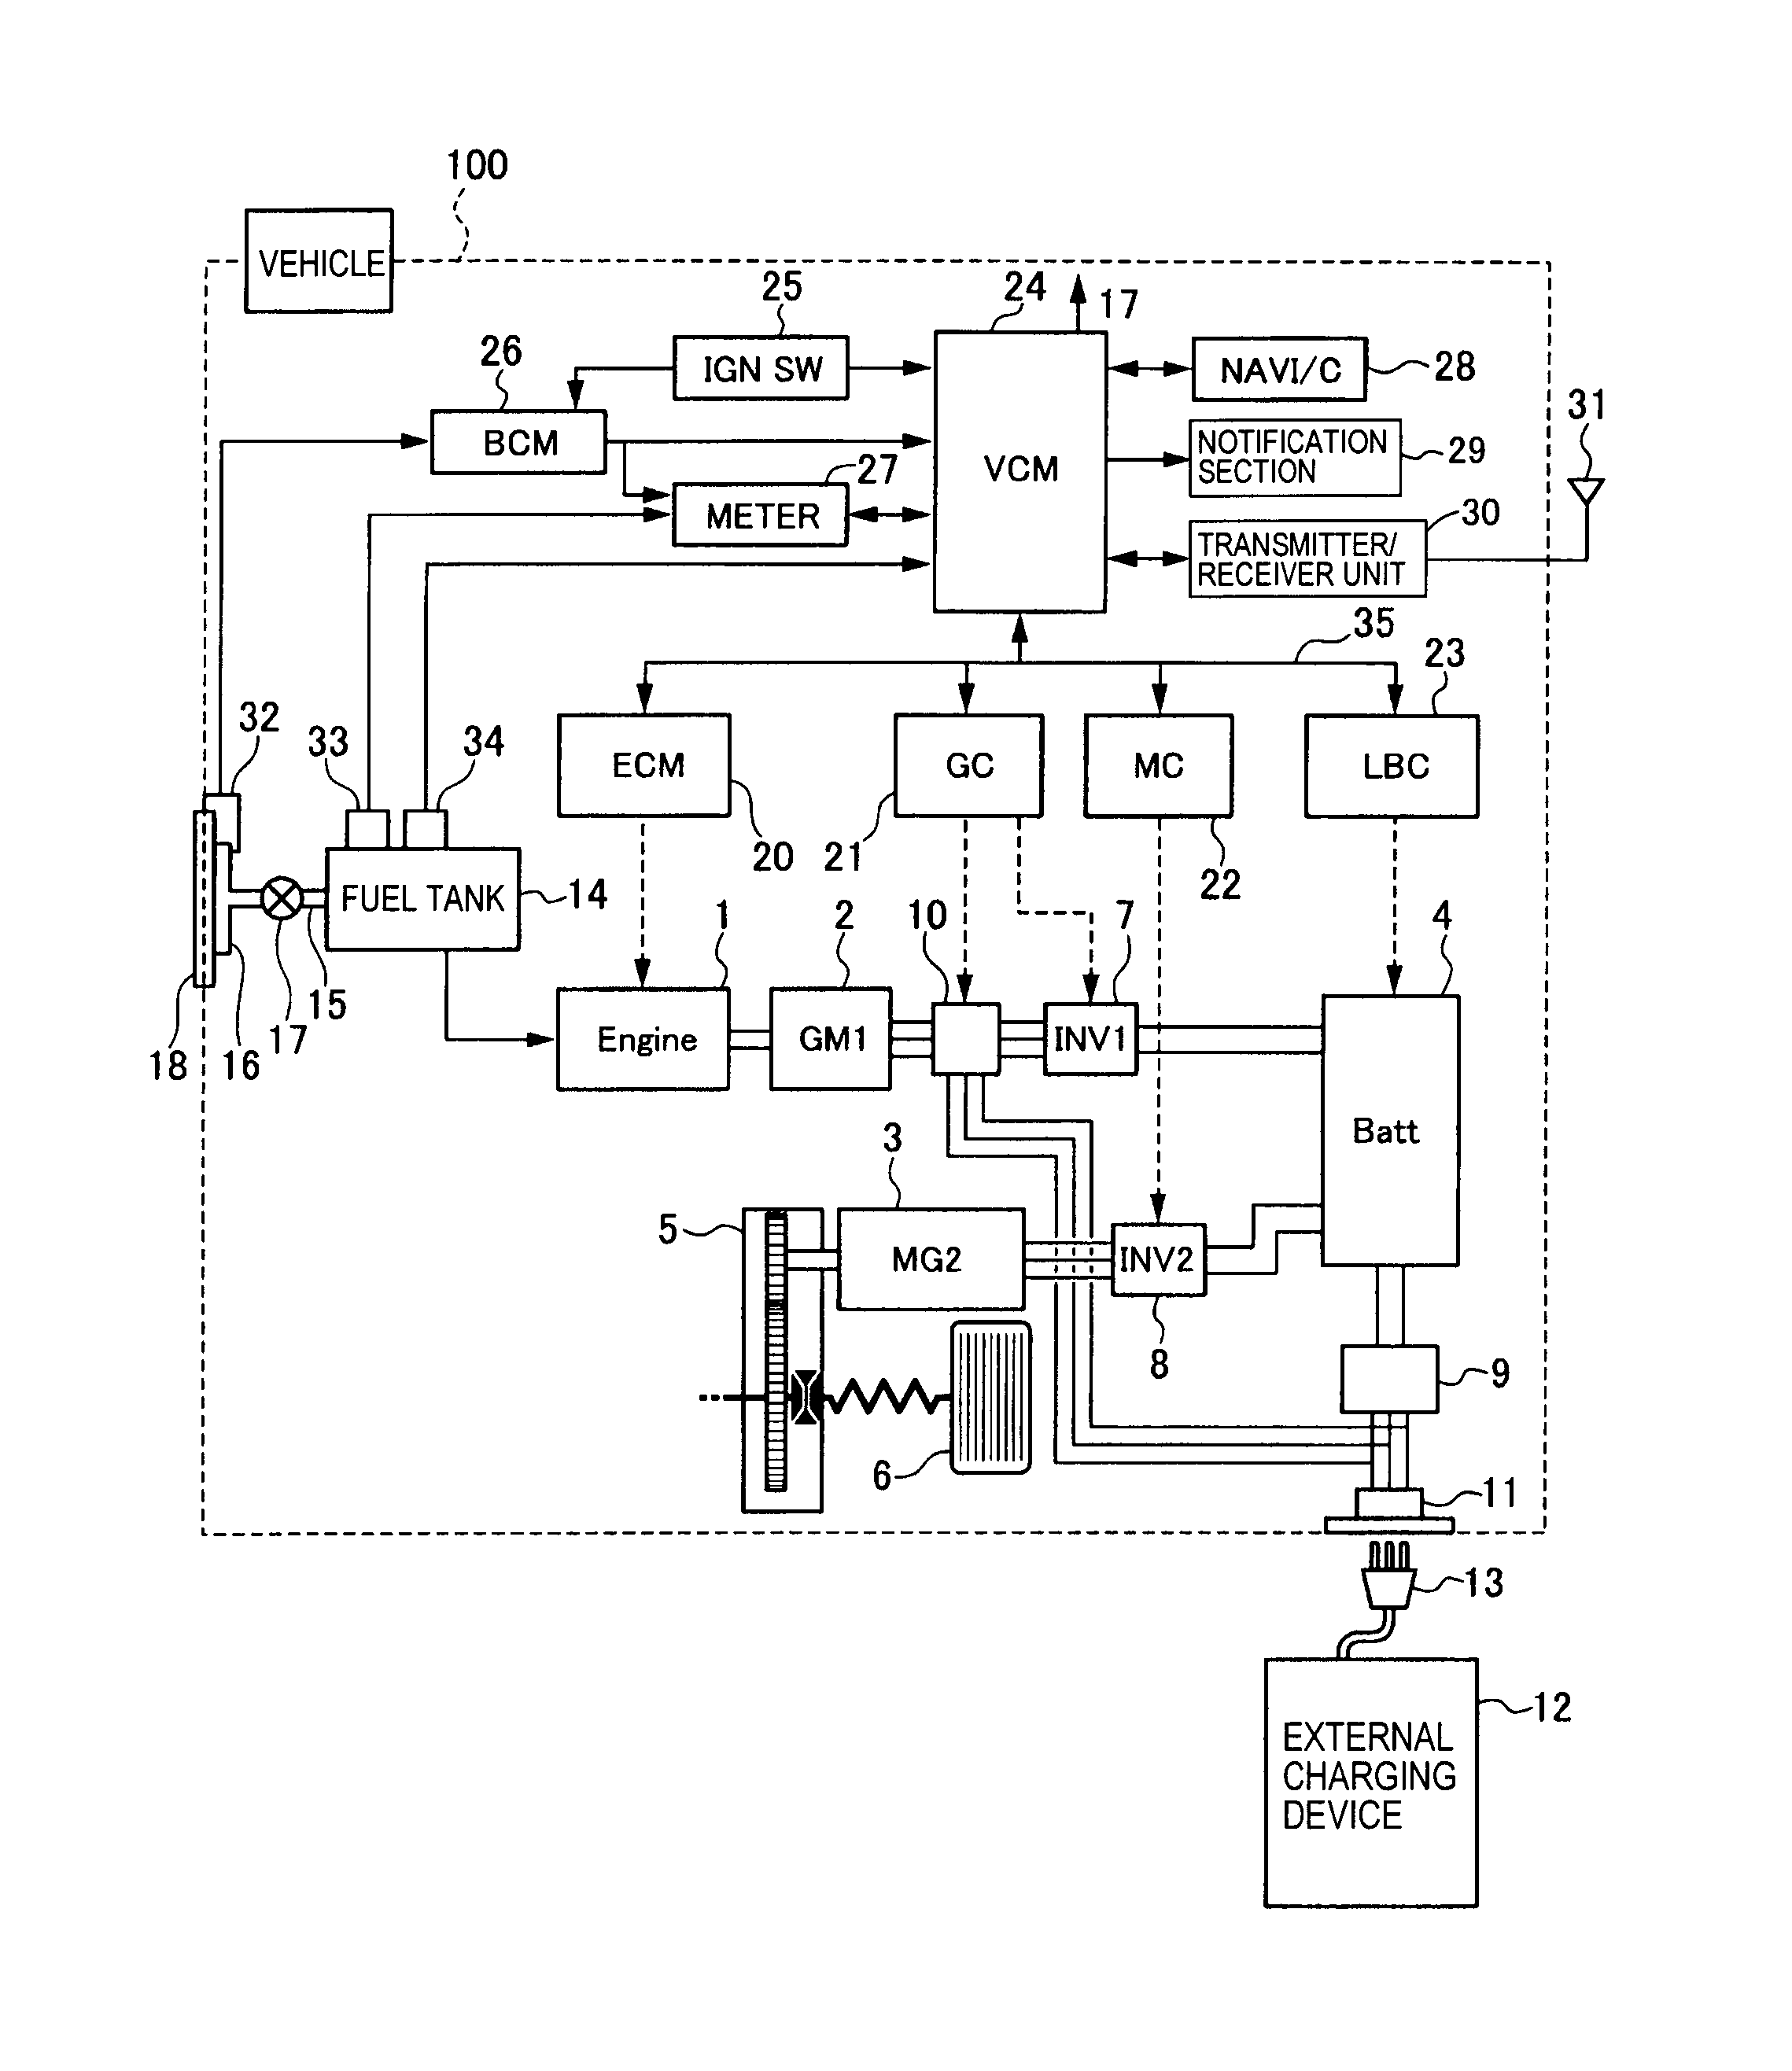 cheerson cx-20 wiring diagram